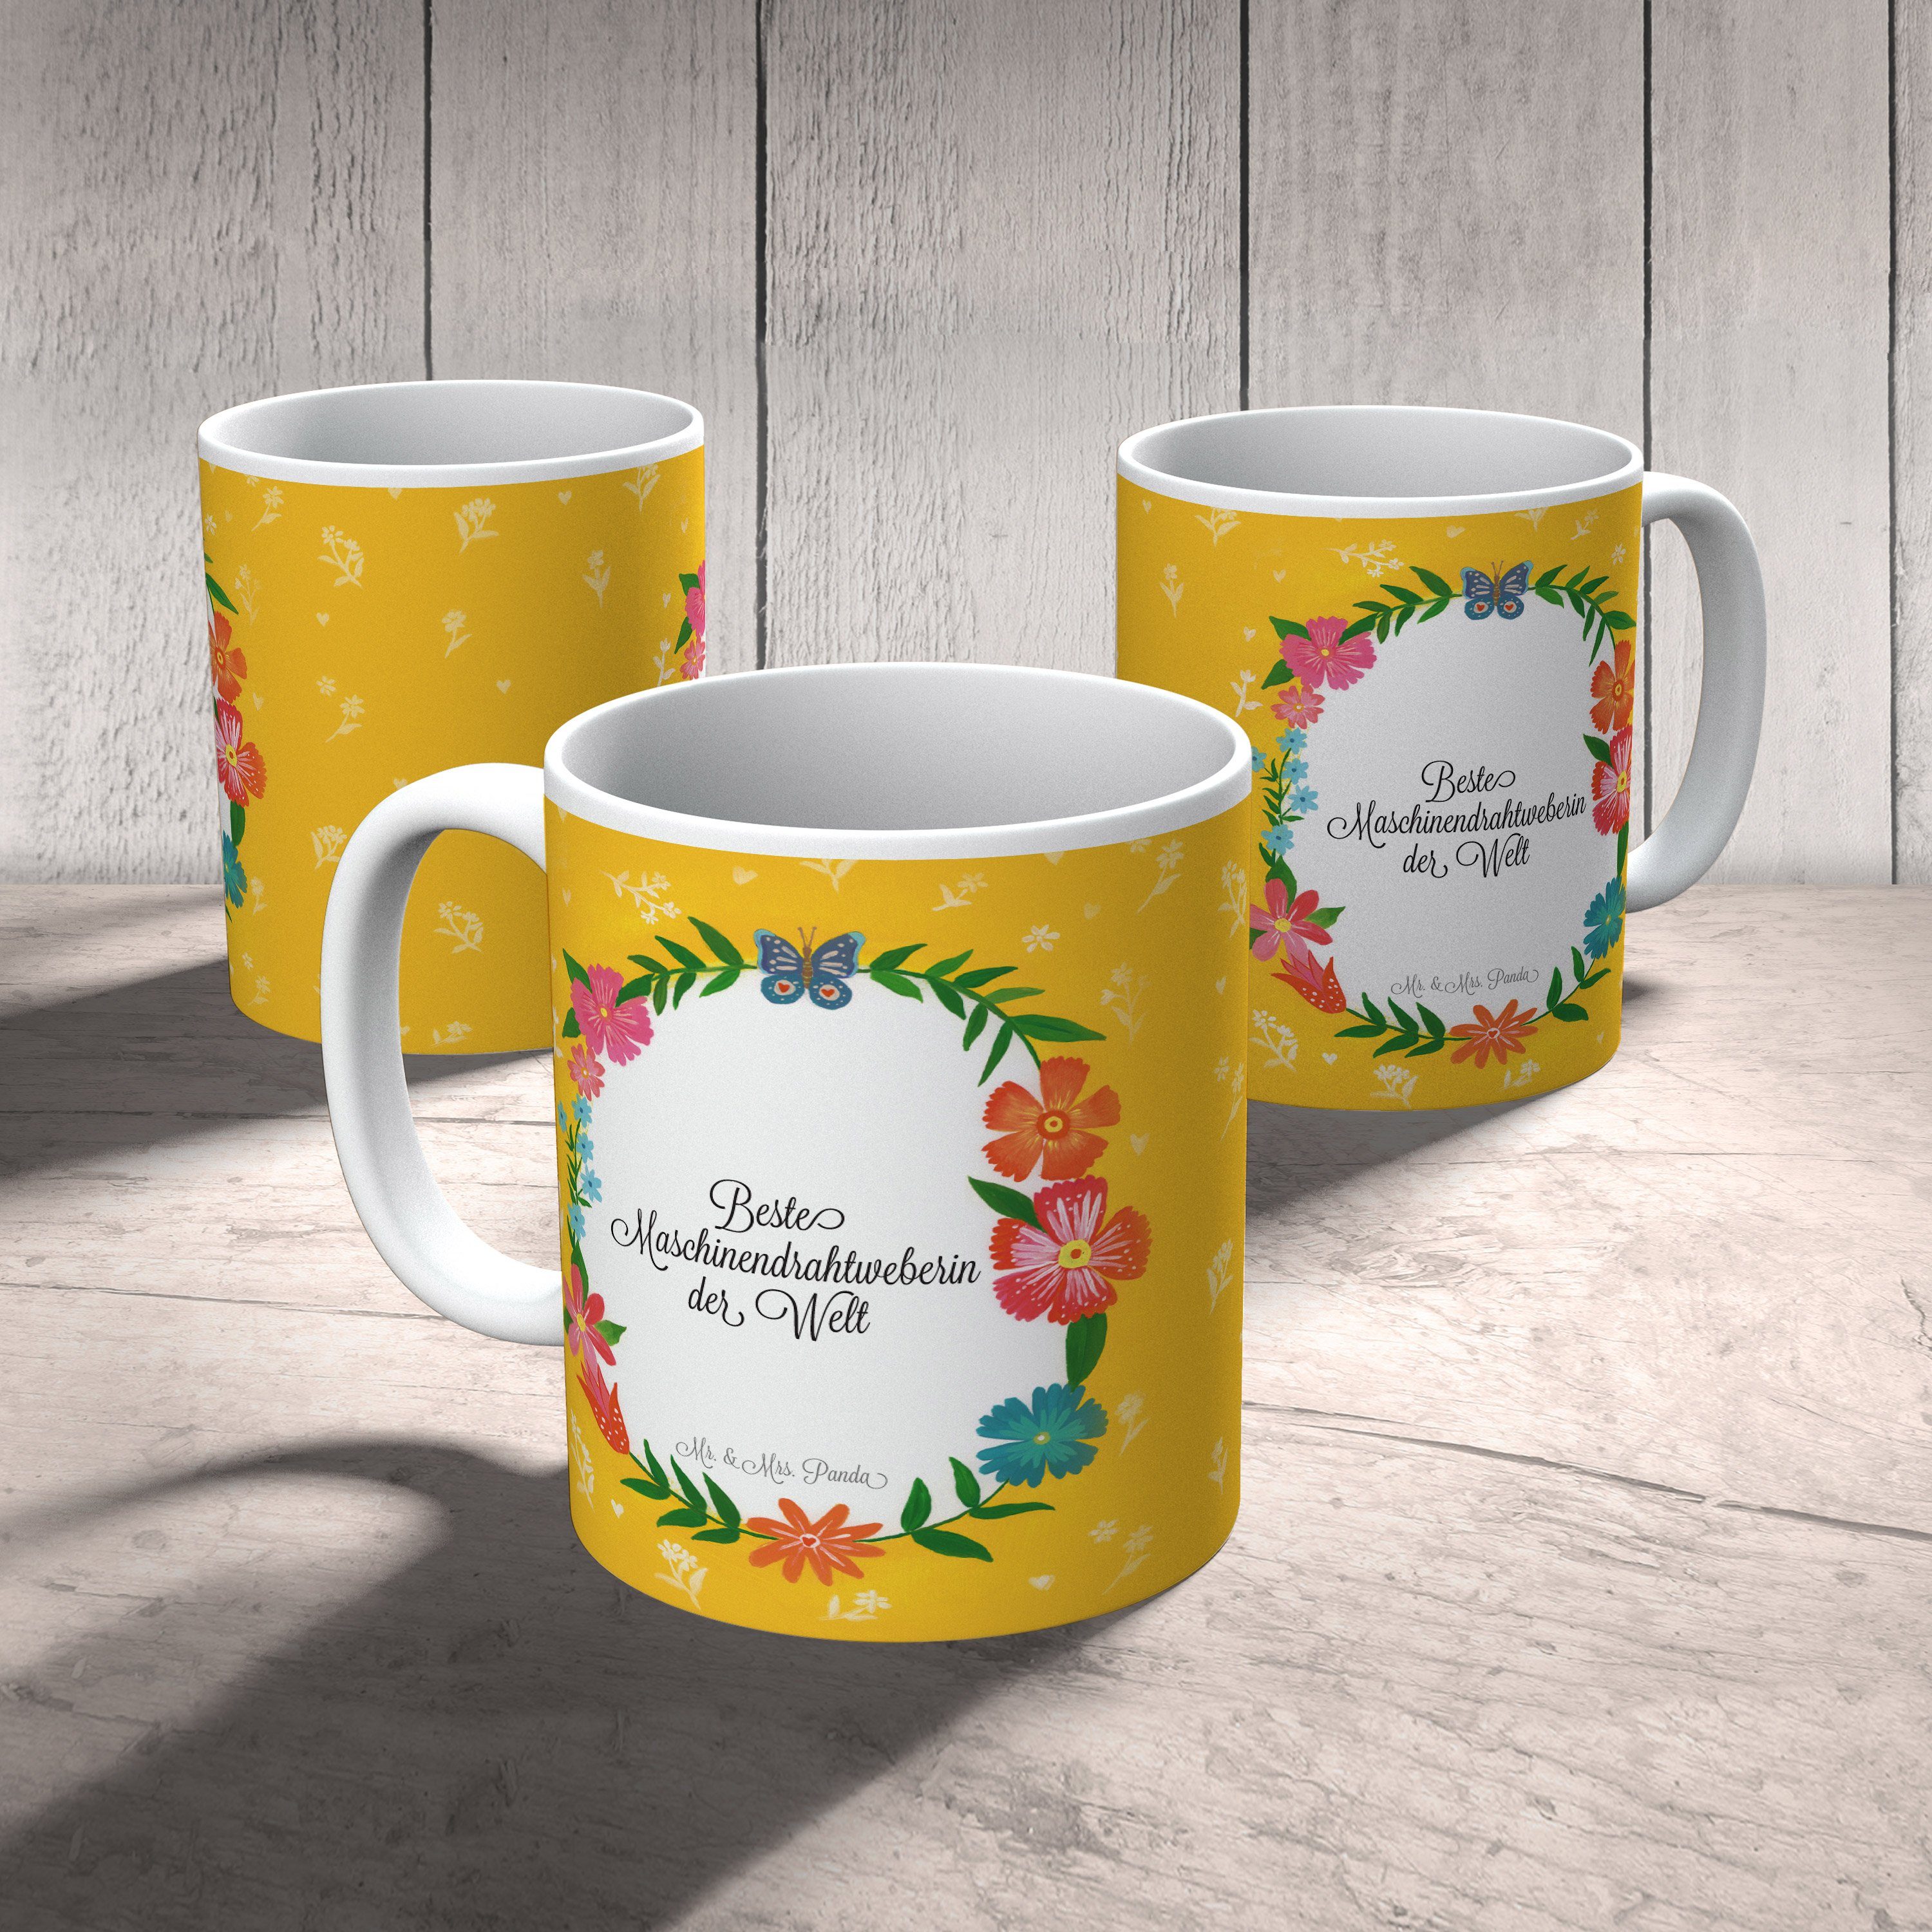 Mr. & Mrs. Panda Kaffeebecher, Maschinendrahtweberin - Keramik Bachelor, Ta, Geschenk Tasse Geschenk